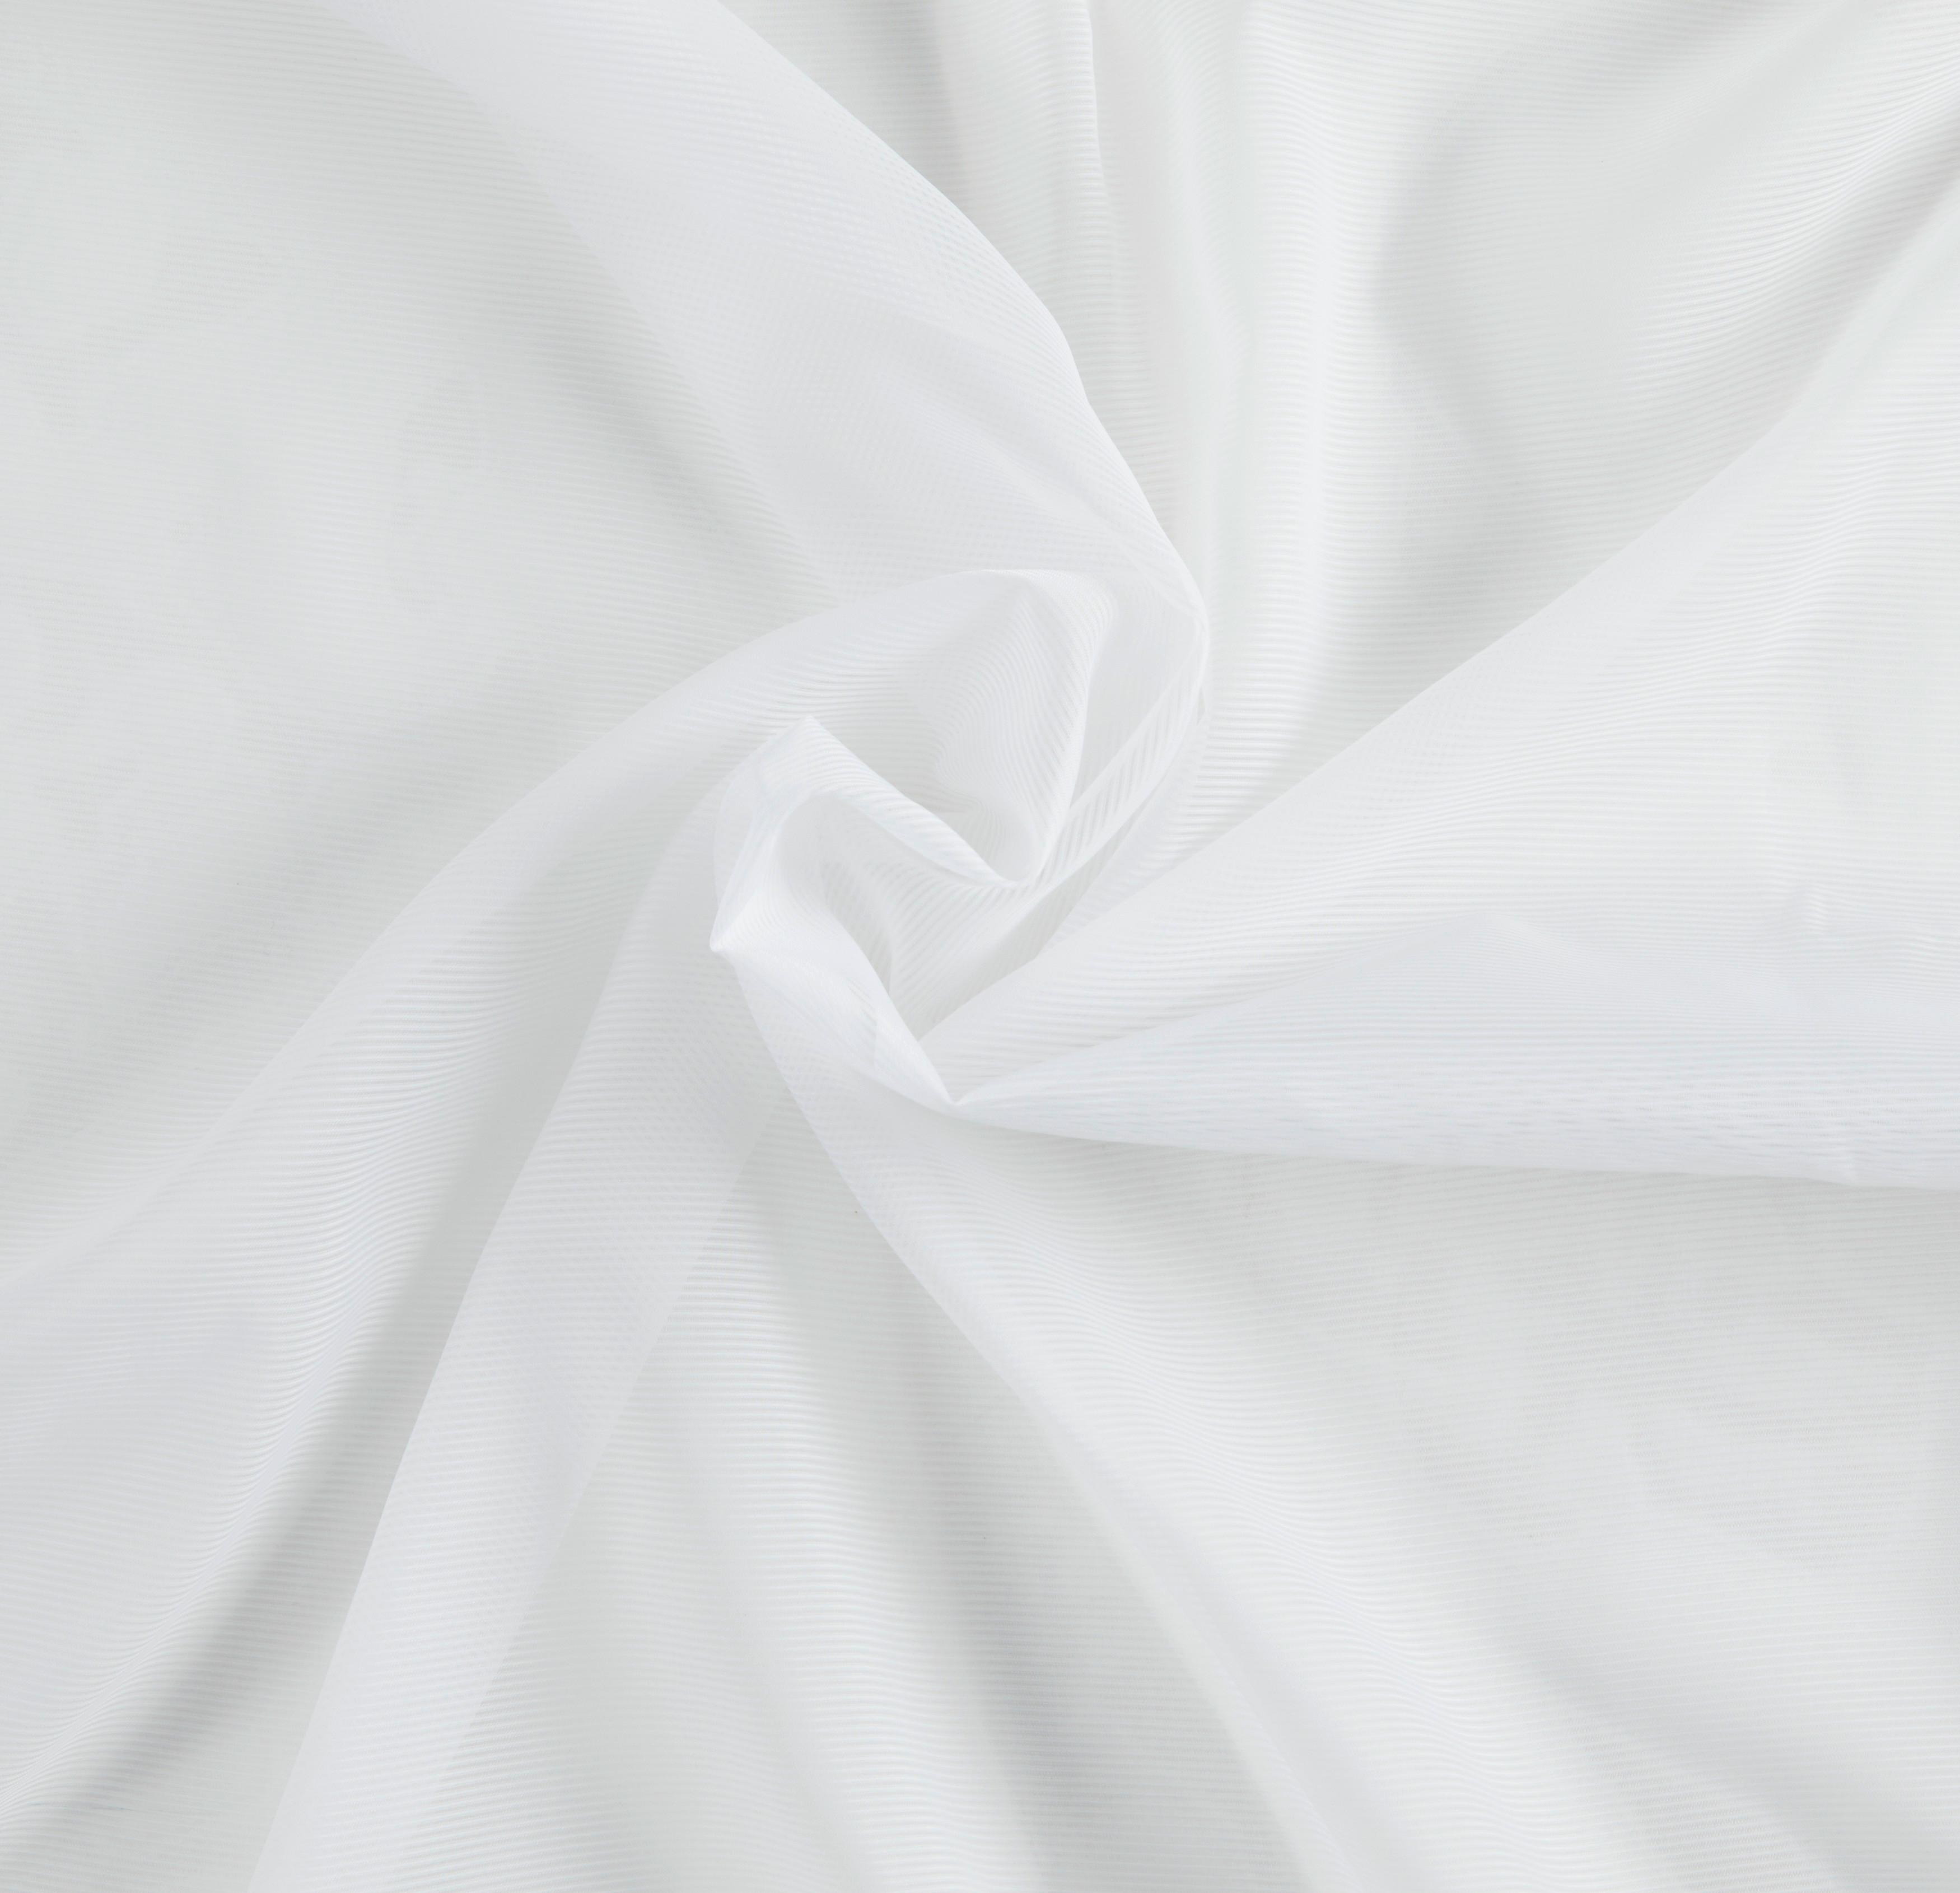 Készfüggöny Rita 140/245 - Fehér, Textil (140/245cm) - Modern Living